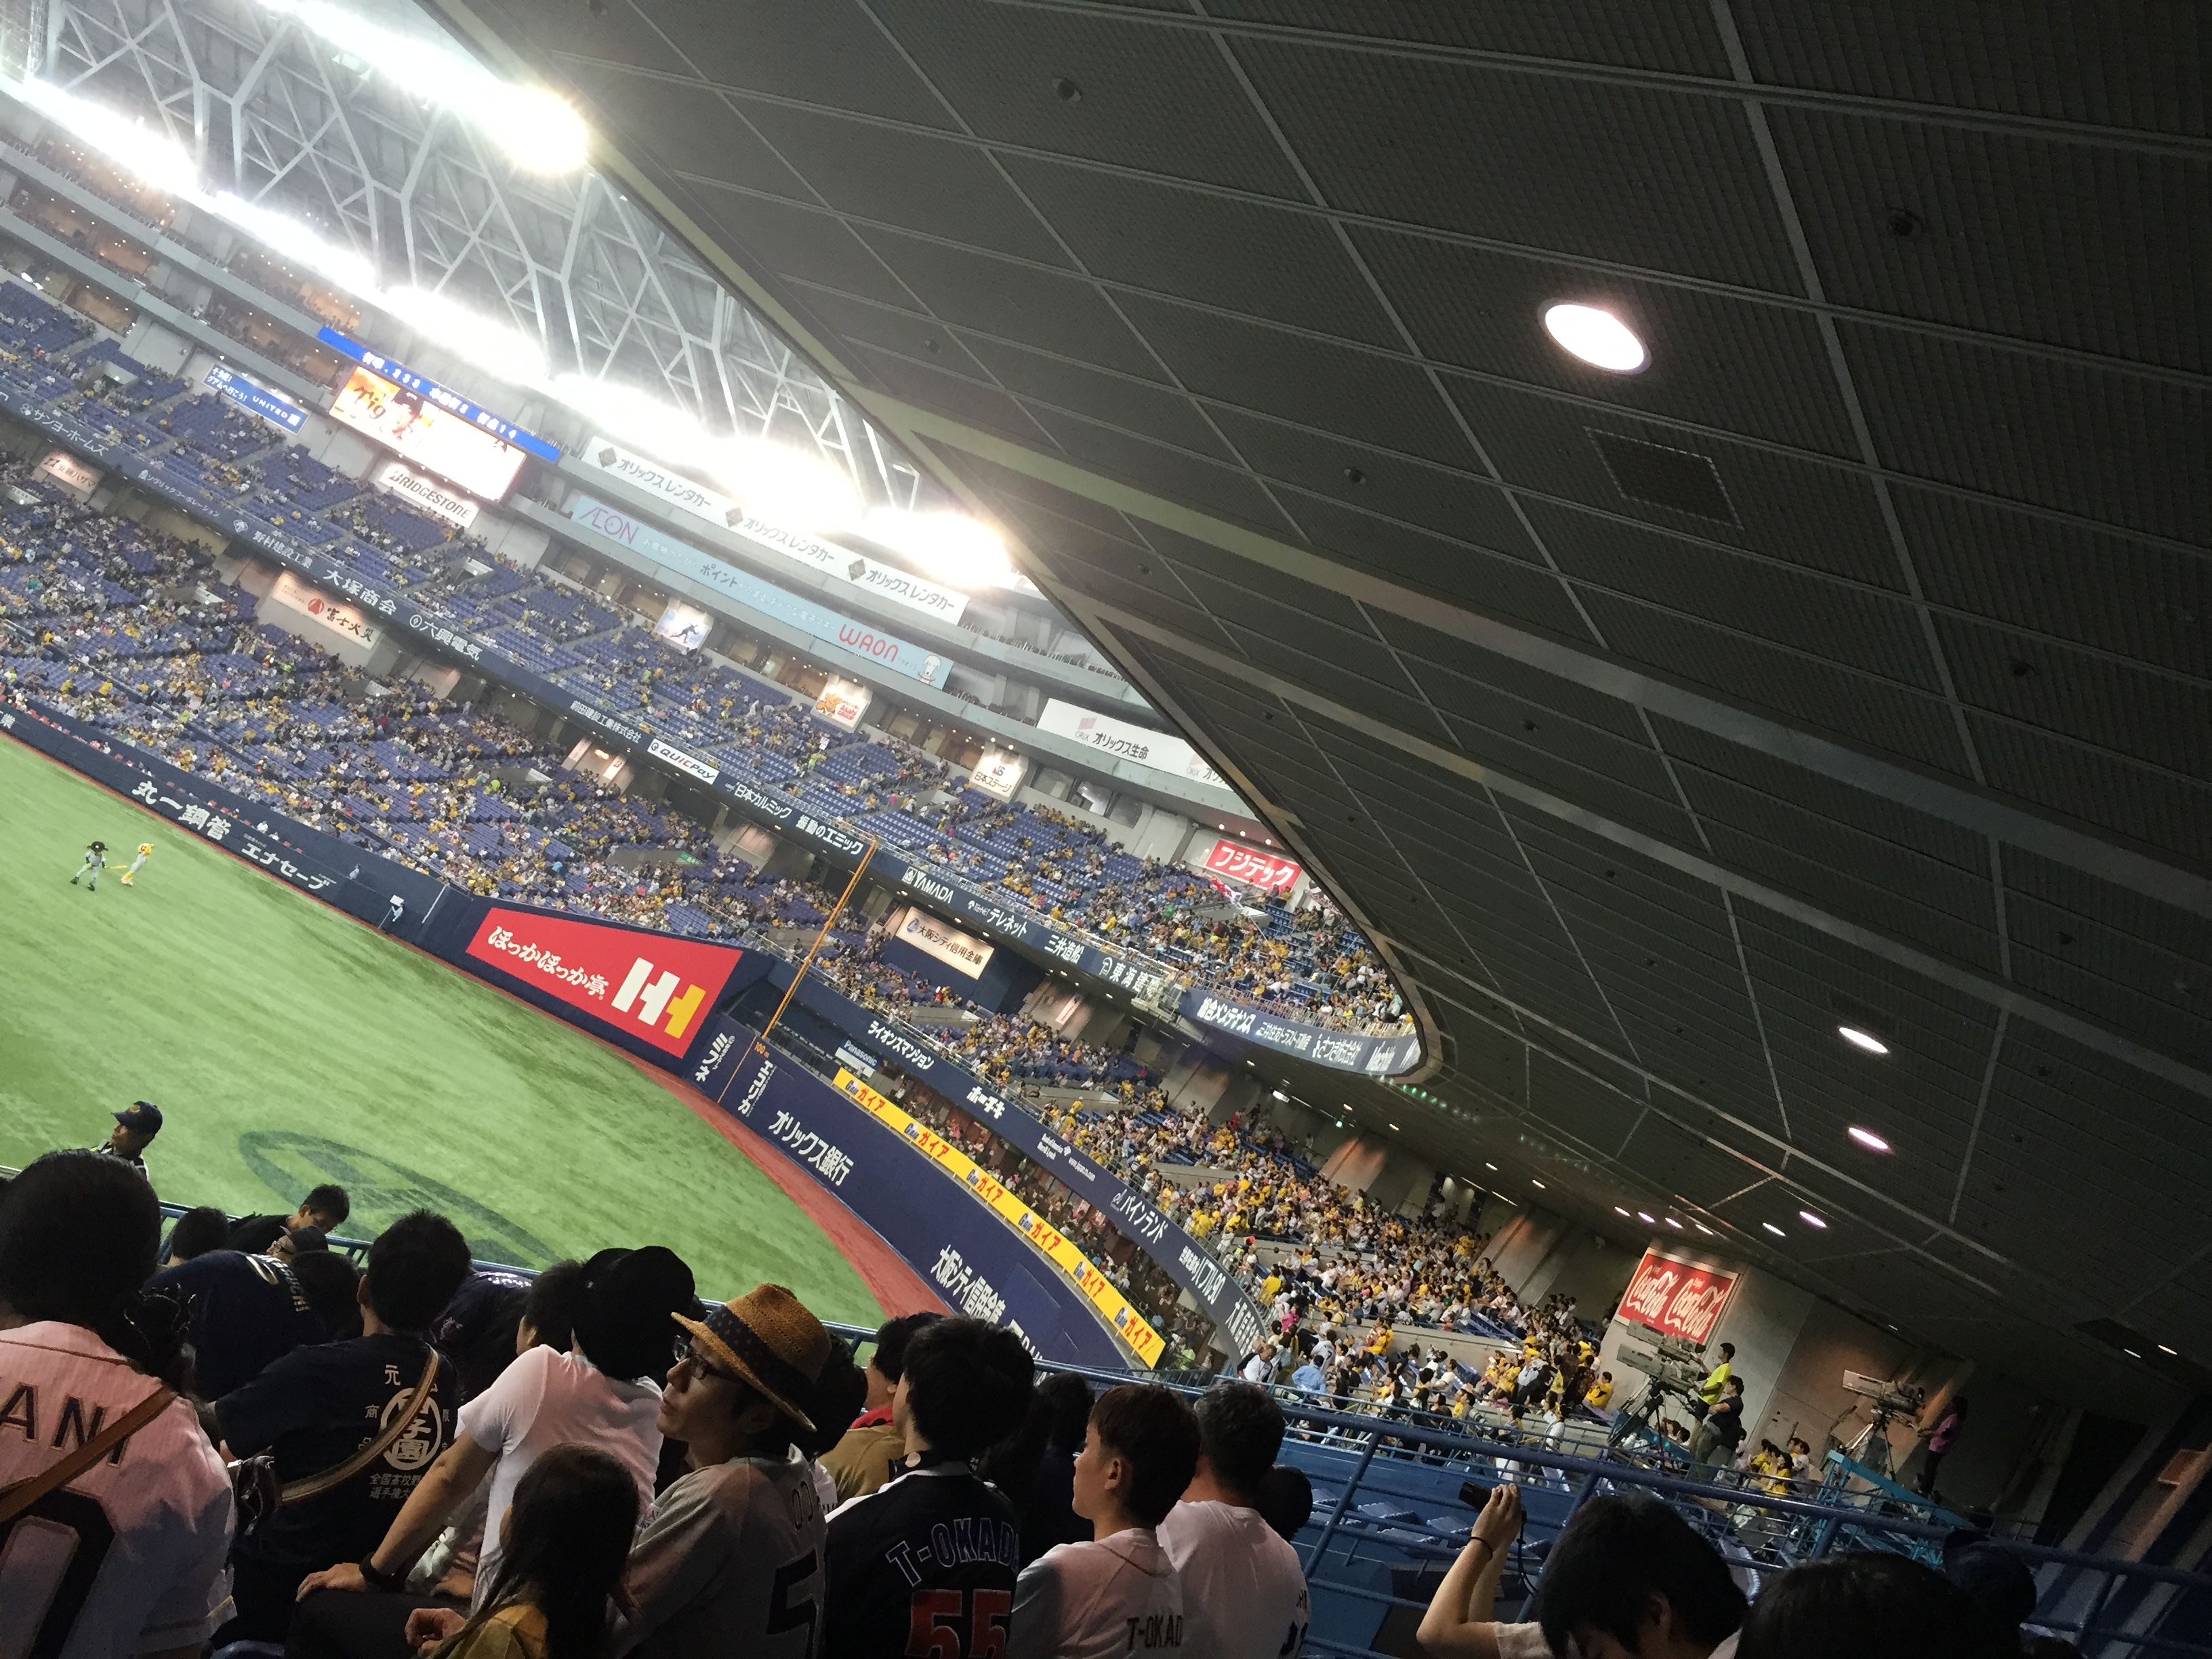 2015年6月13日 オリックス 対 阪神 関西対決2015 絶対に負けられへん。